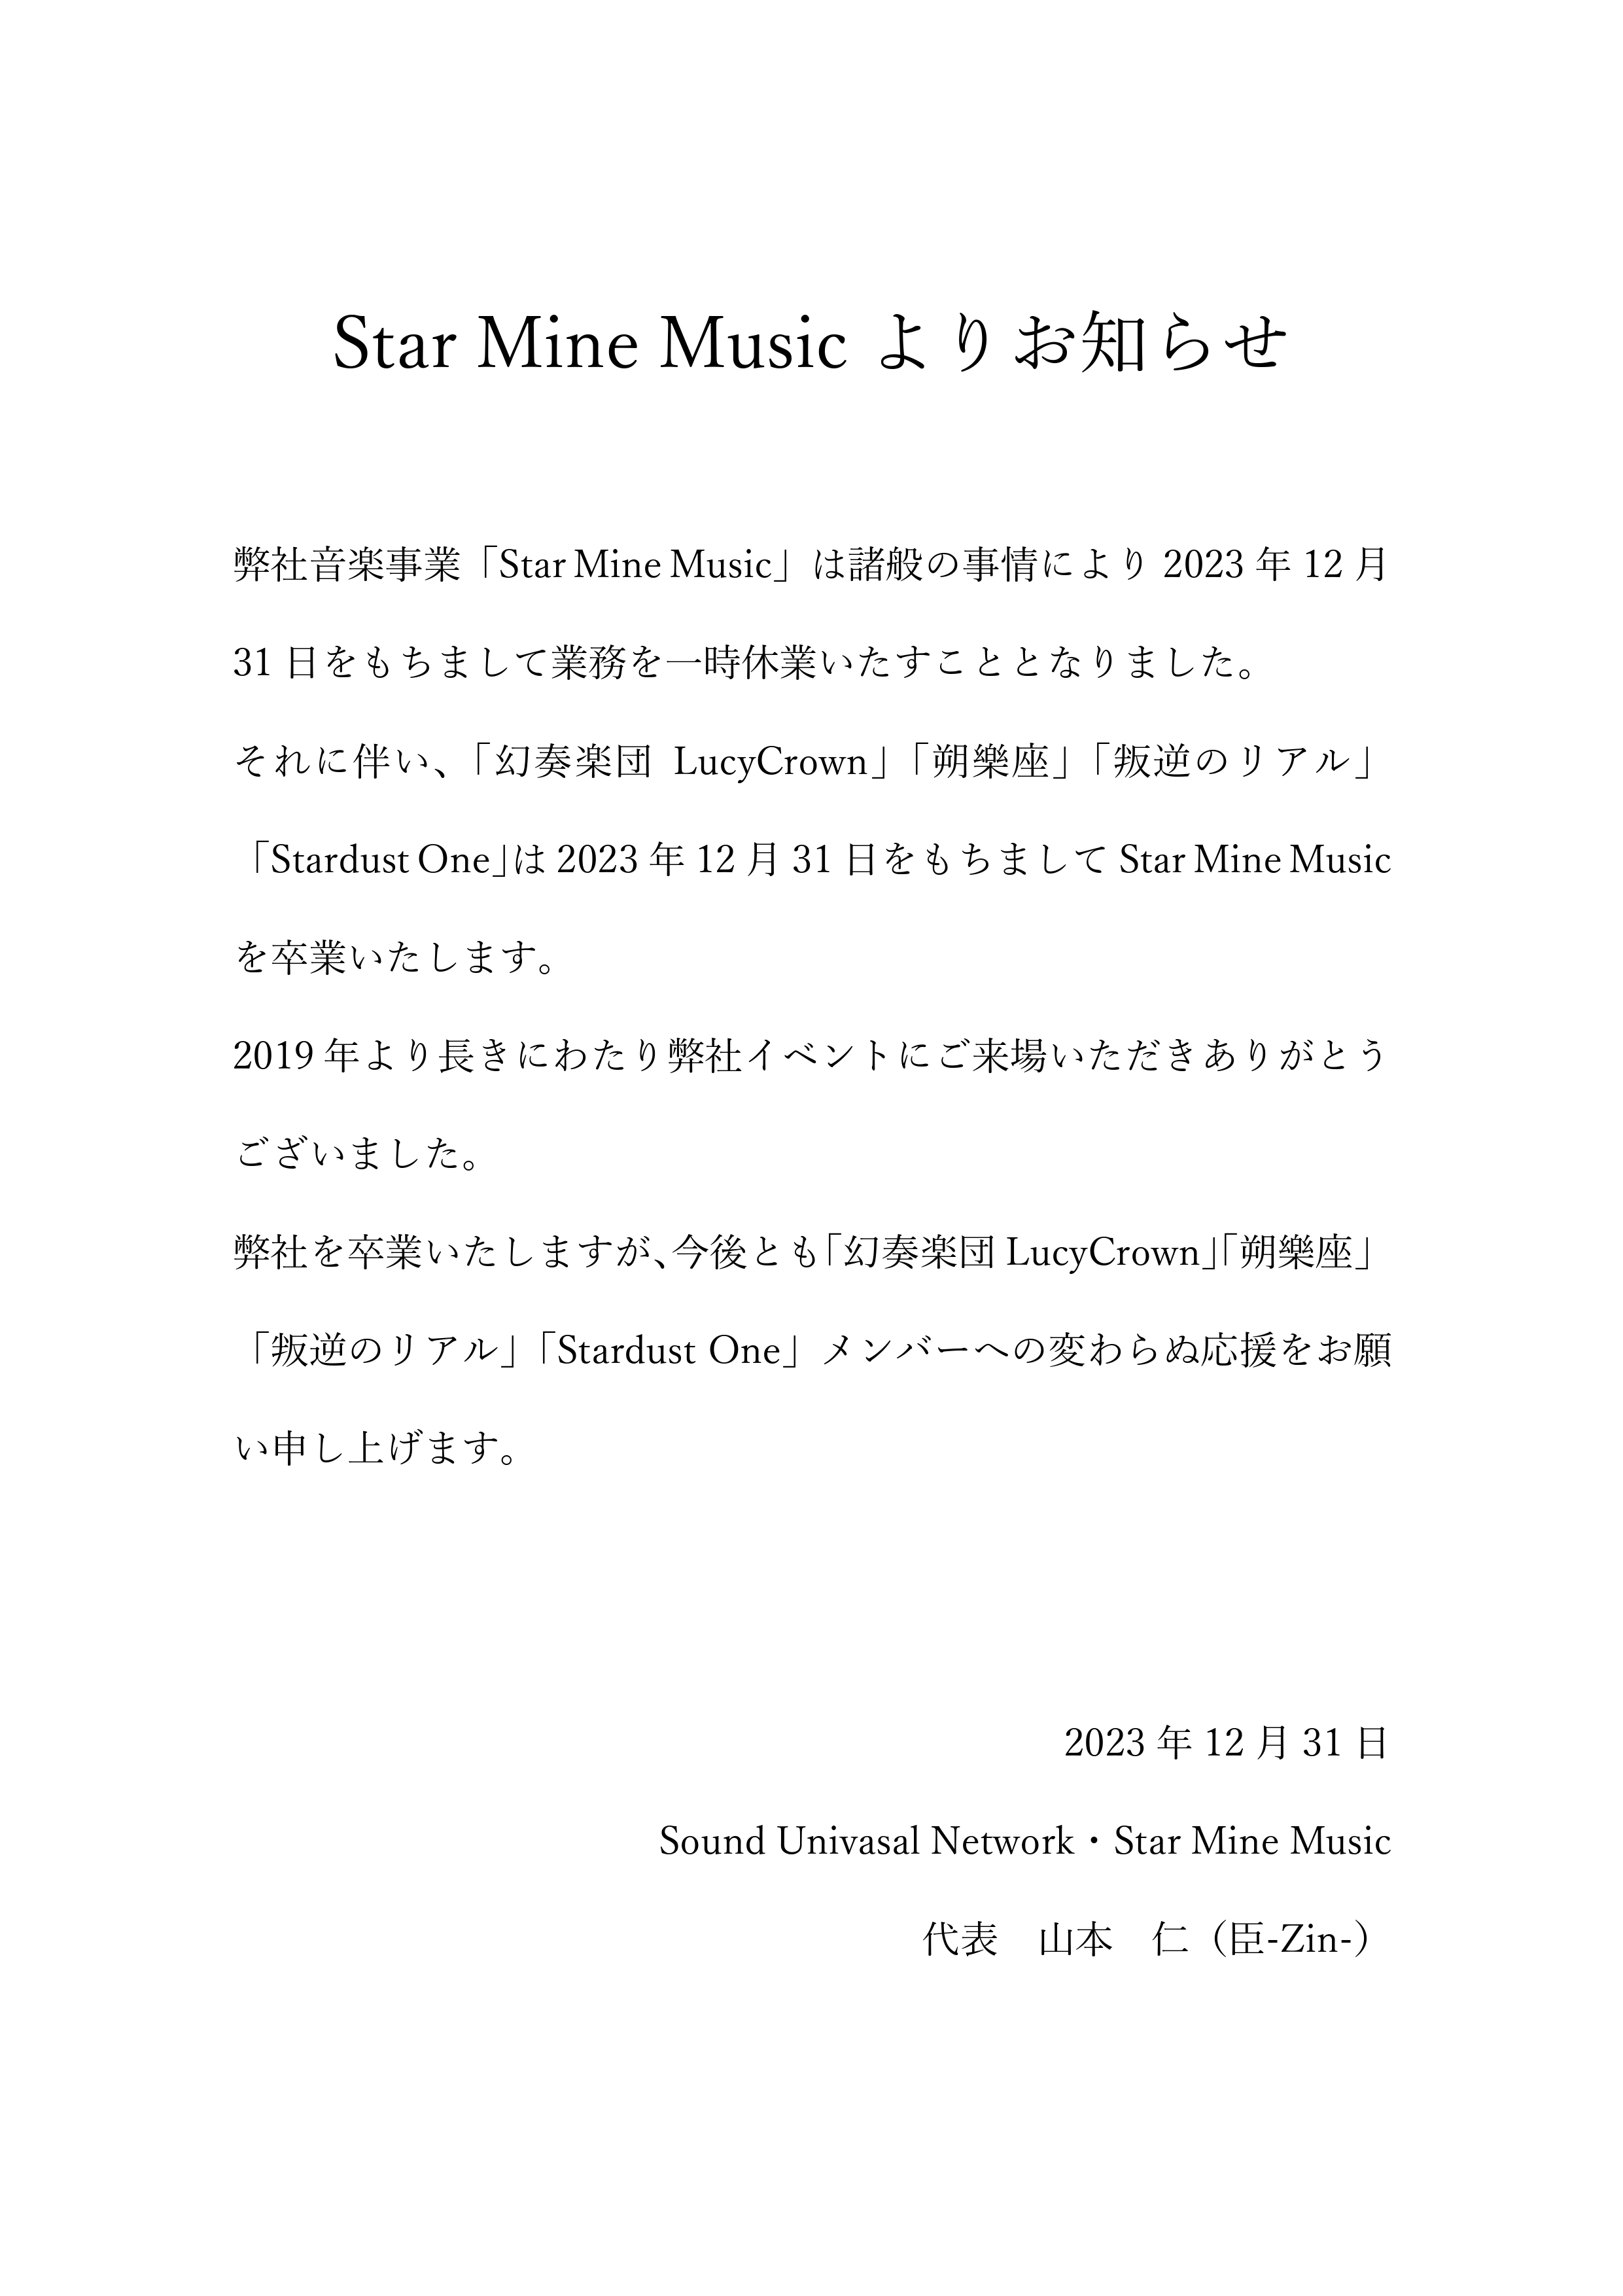 『Star Mine Musicよりお知らせ』